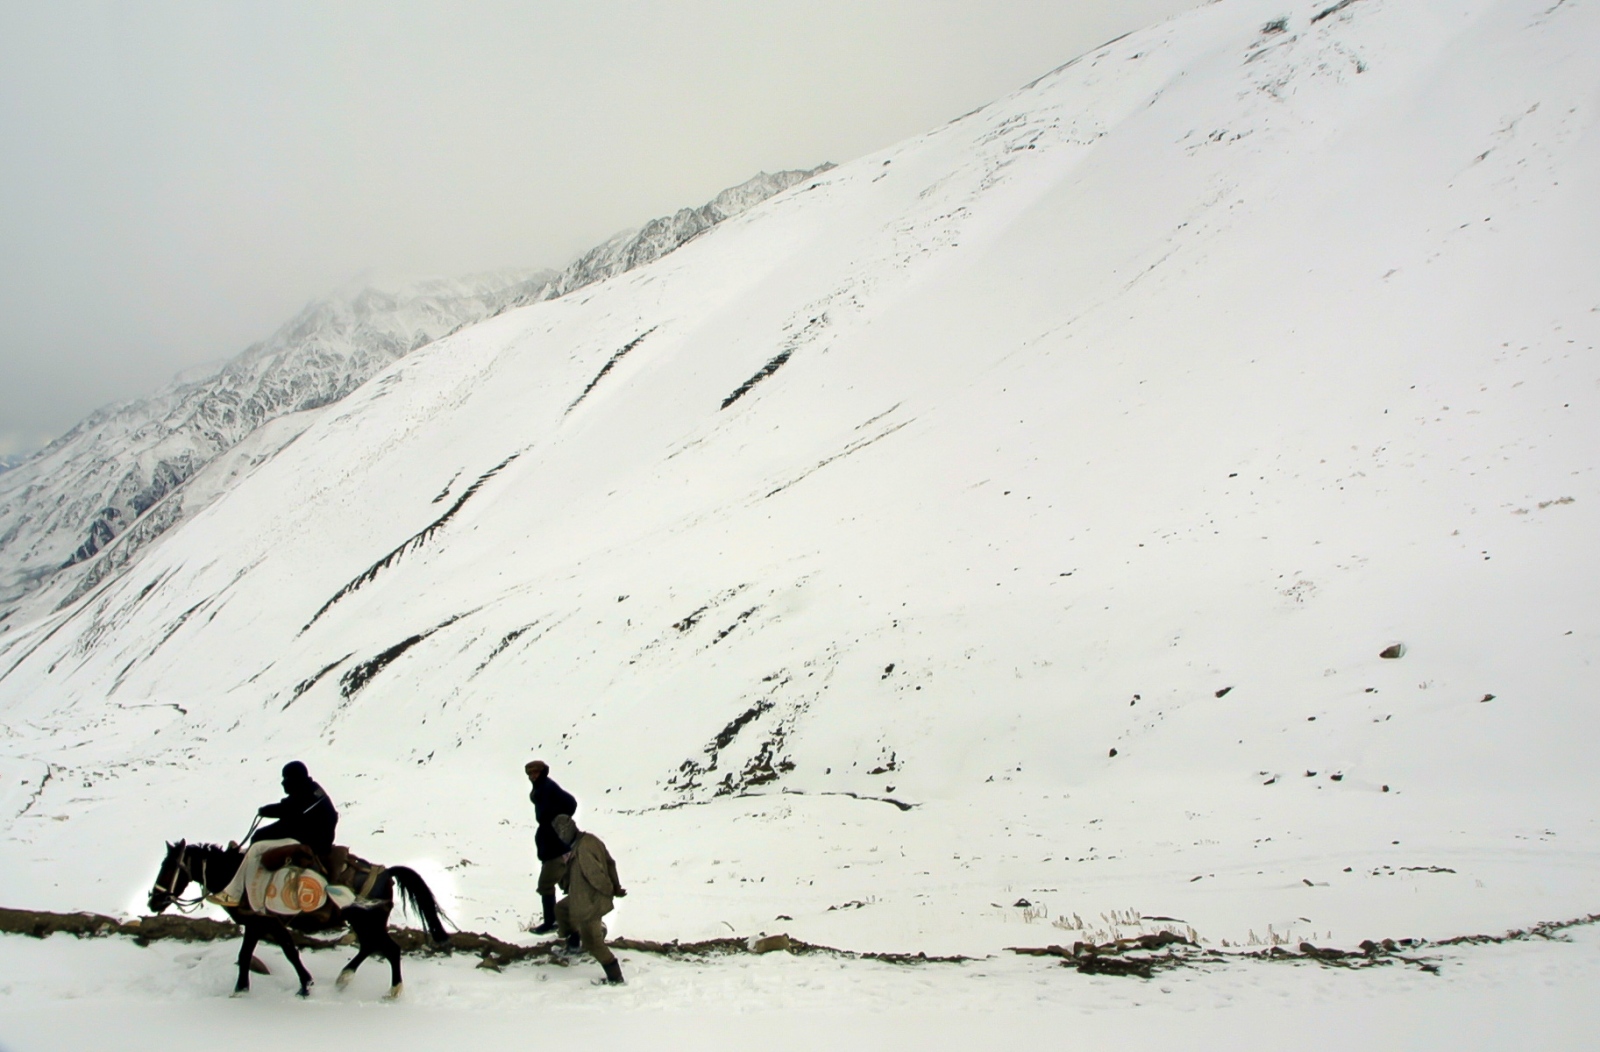 Onward to Kabul - Fifteen thousand feet up on the Anjuman pass a blizzard...